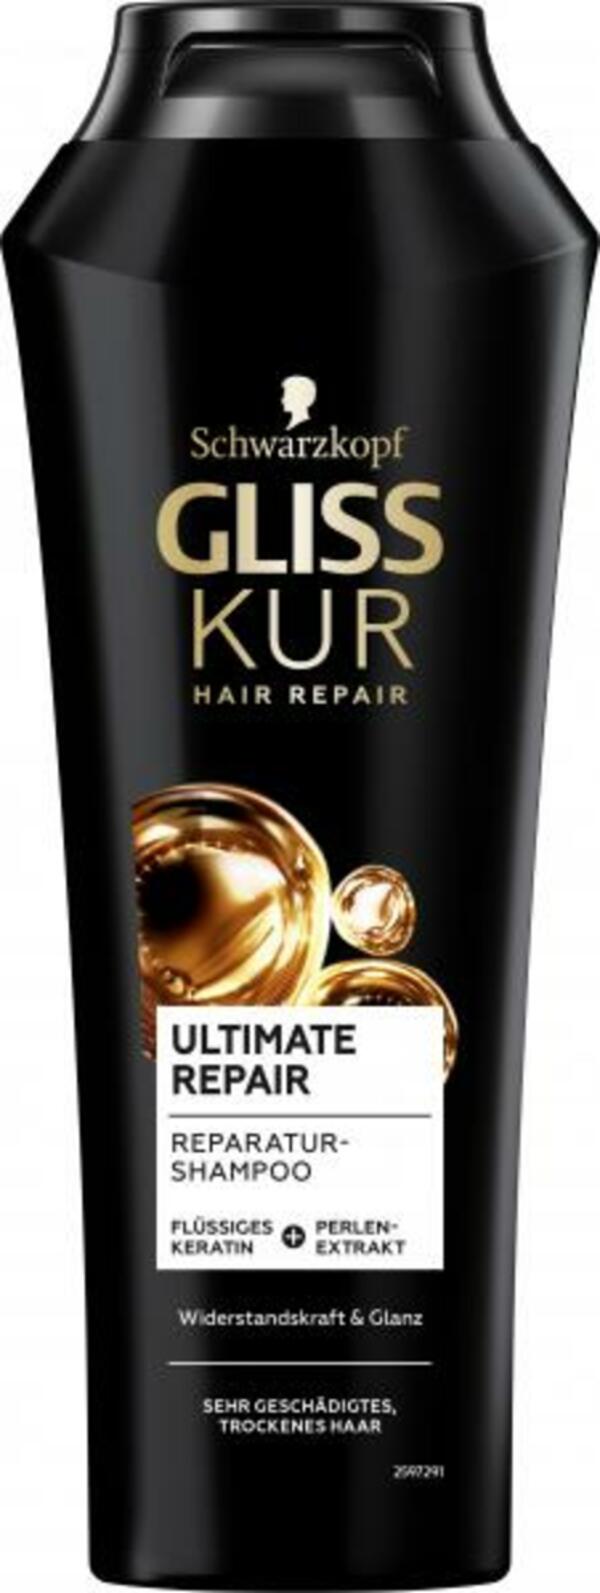 Bild 1 von Schwarzkopf Gliss Kur Shampoo Ultimate Repair